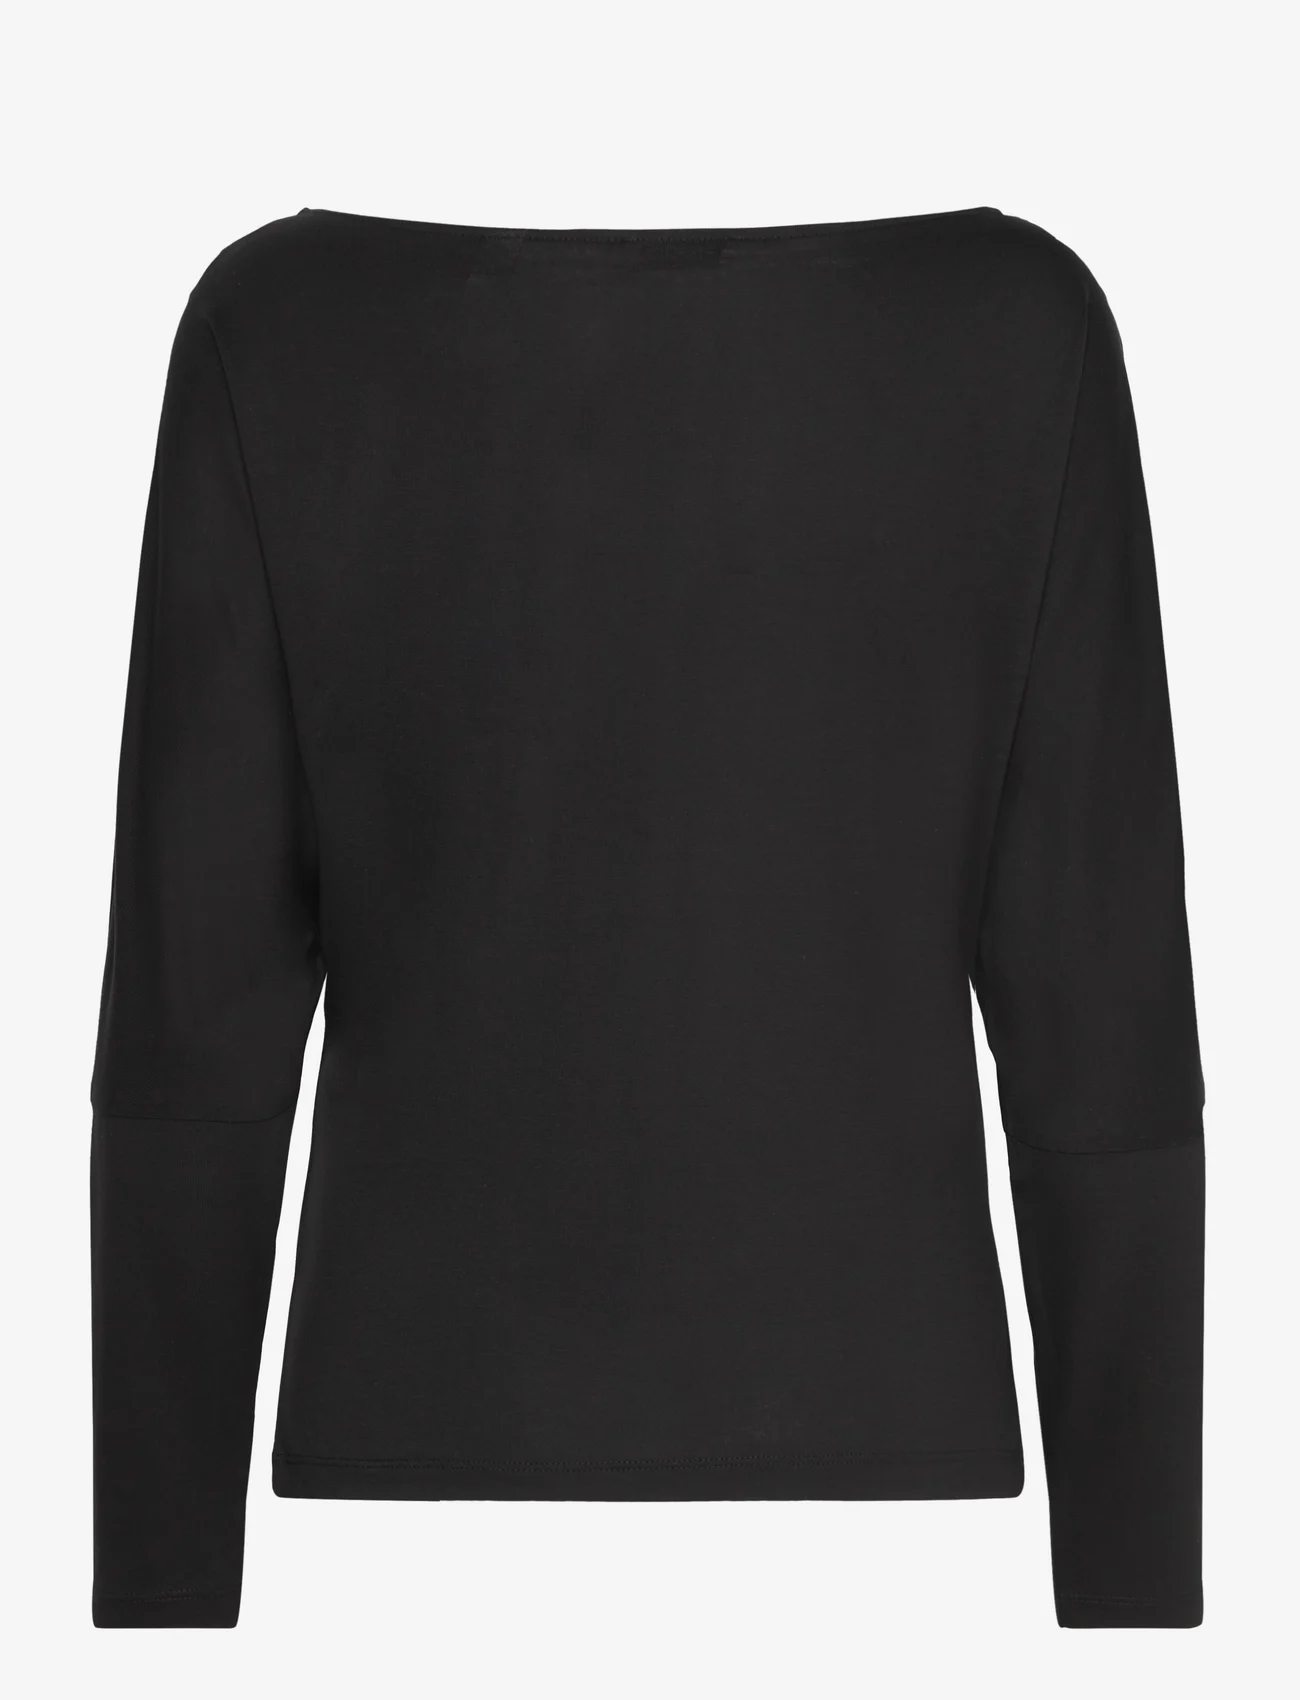 Esprit Casual - T-Shirts - t-shirt & tops - black - 1